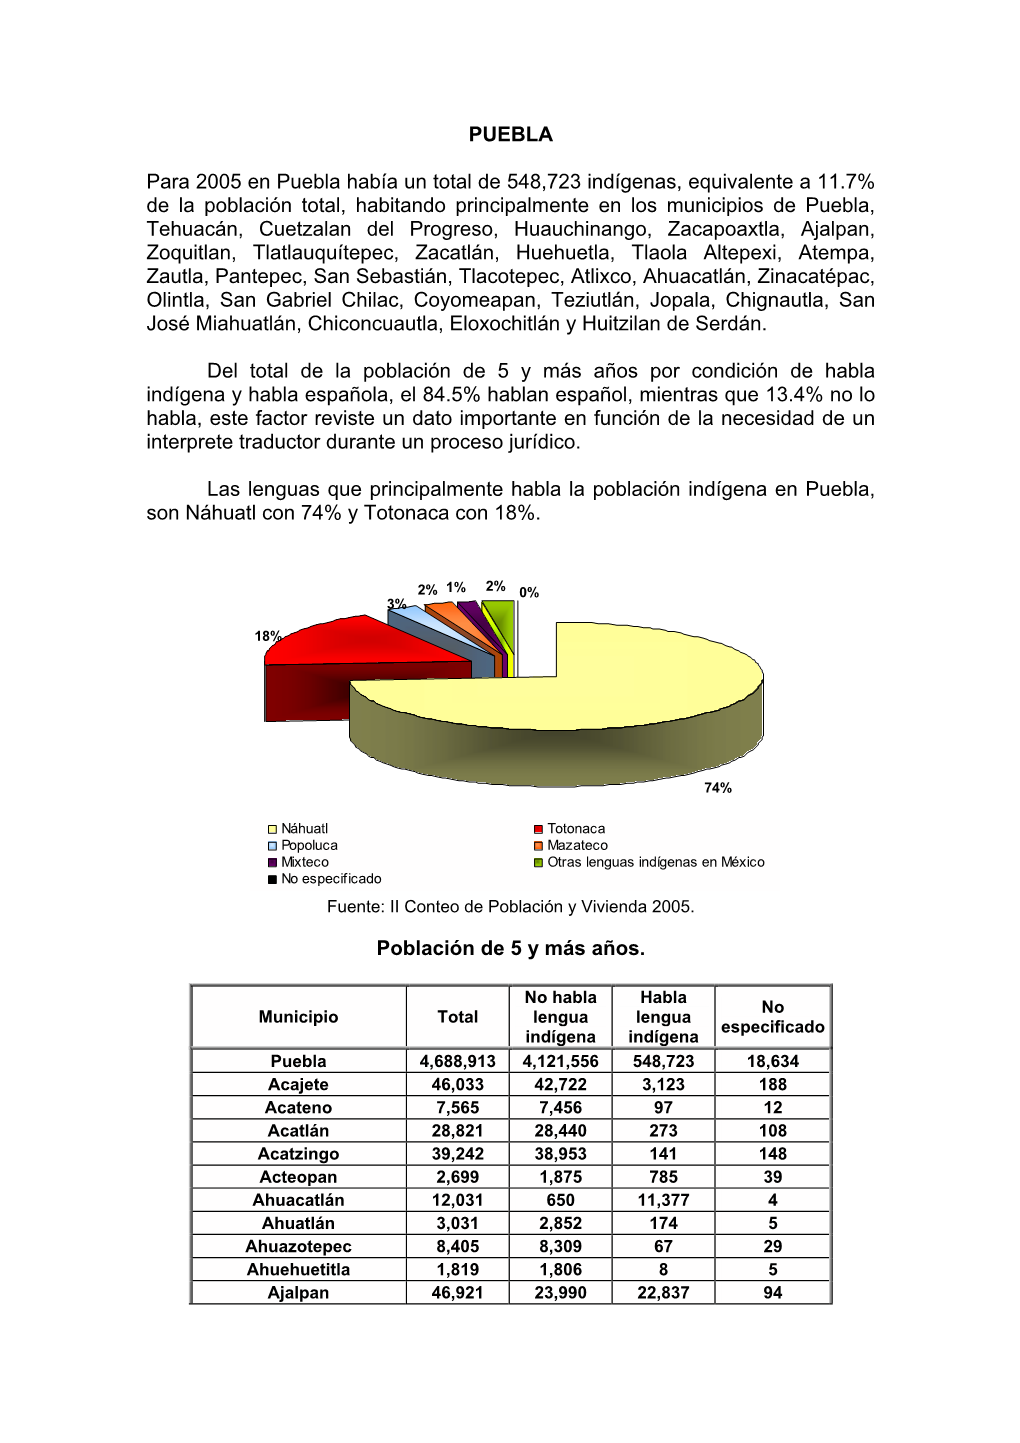 PUEBLA Para 2005 En Puebla Había Un Total De 548,723 Indígenas, Equivalente a 11.7% De La Población Total, Habitando Principa